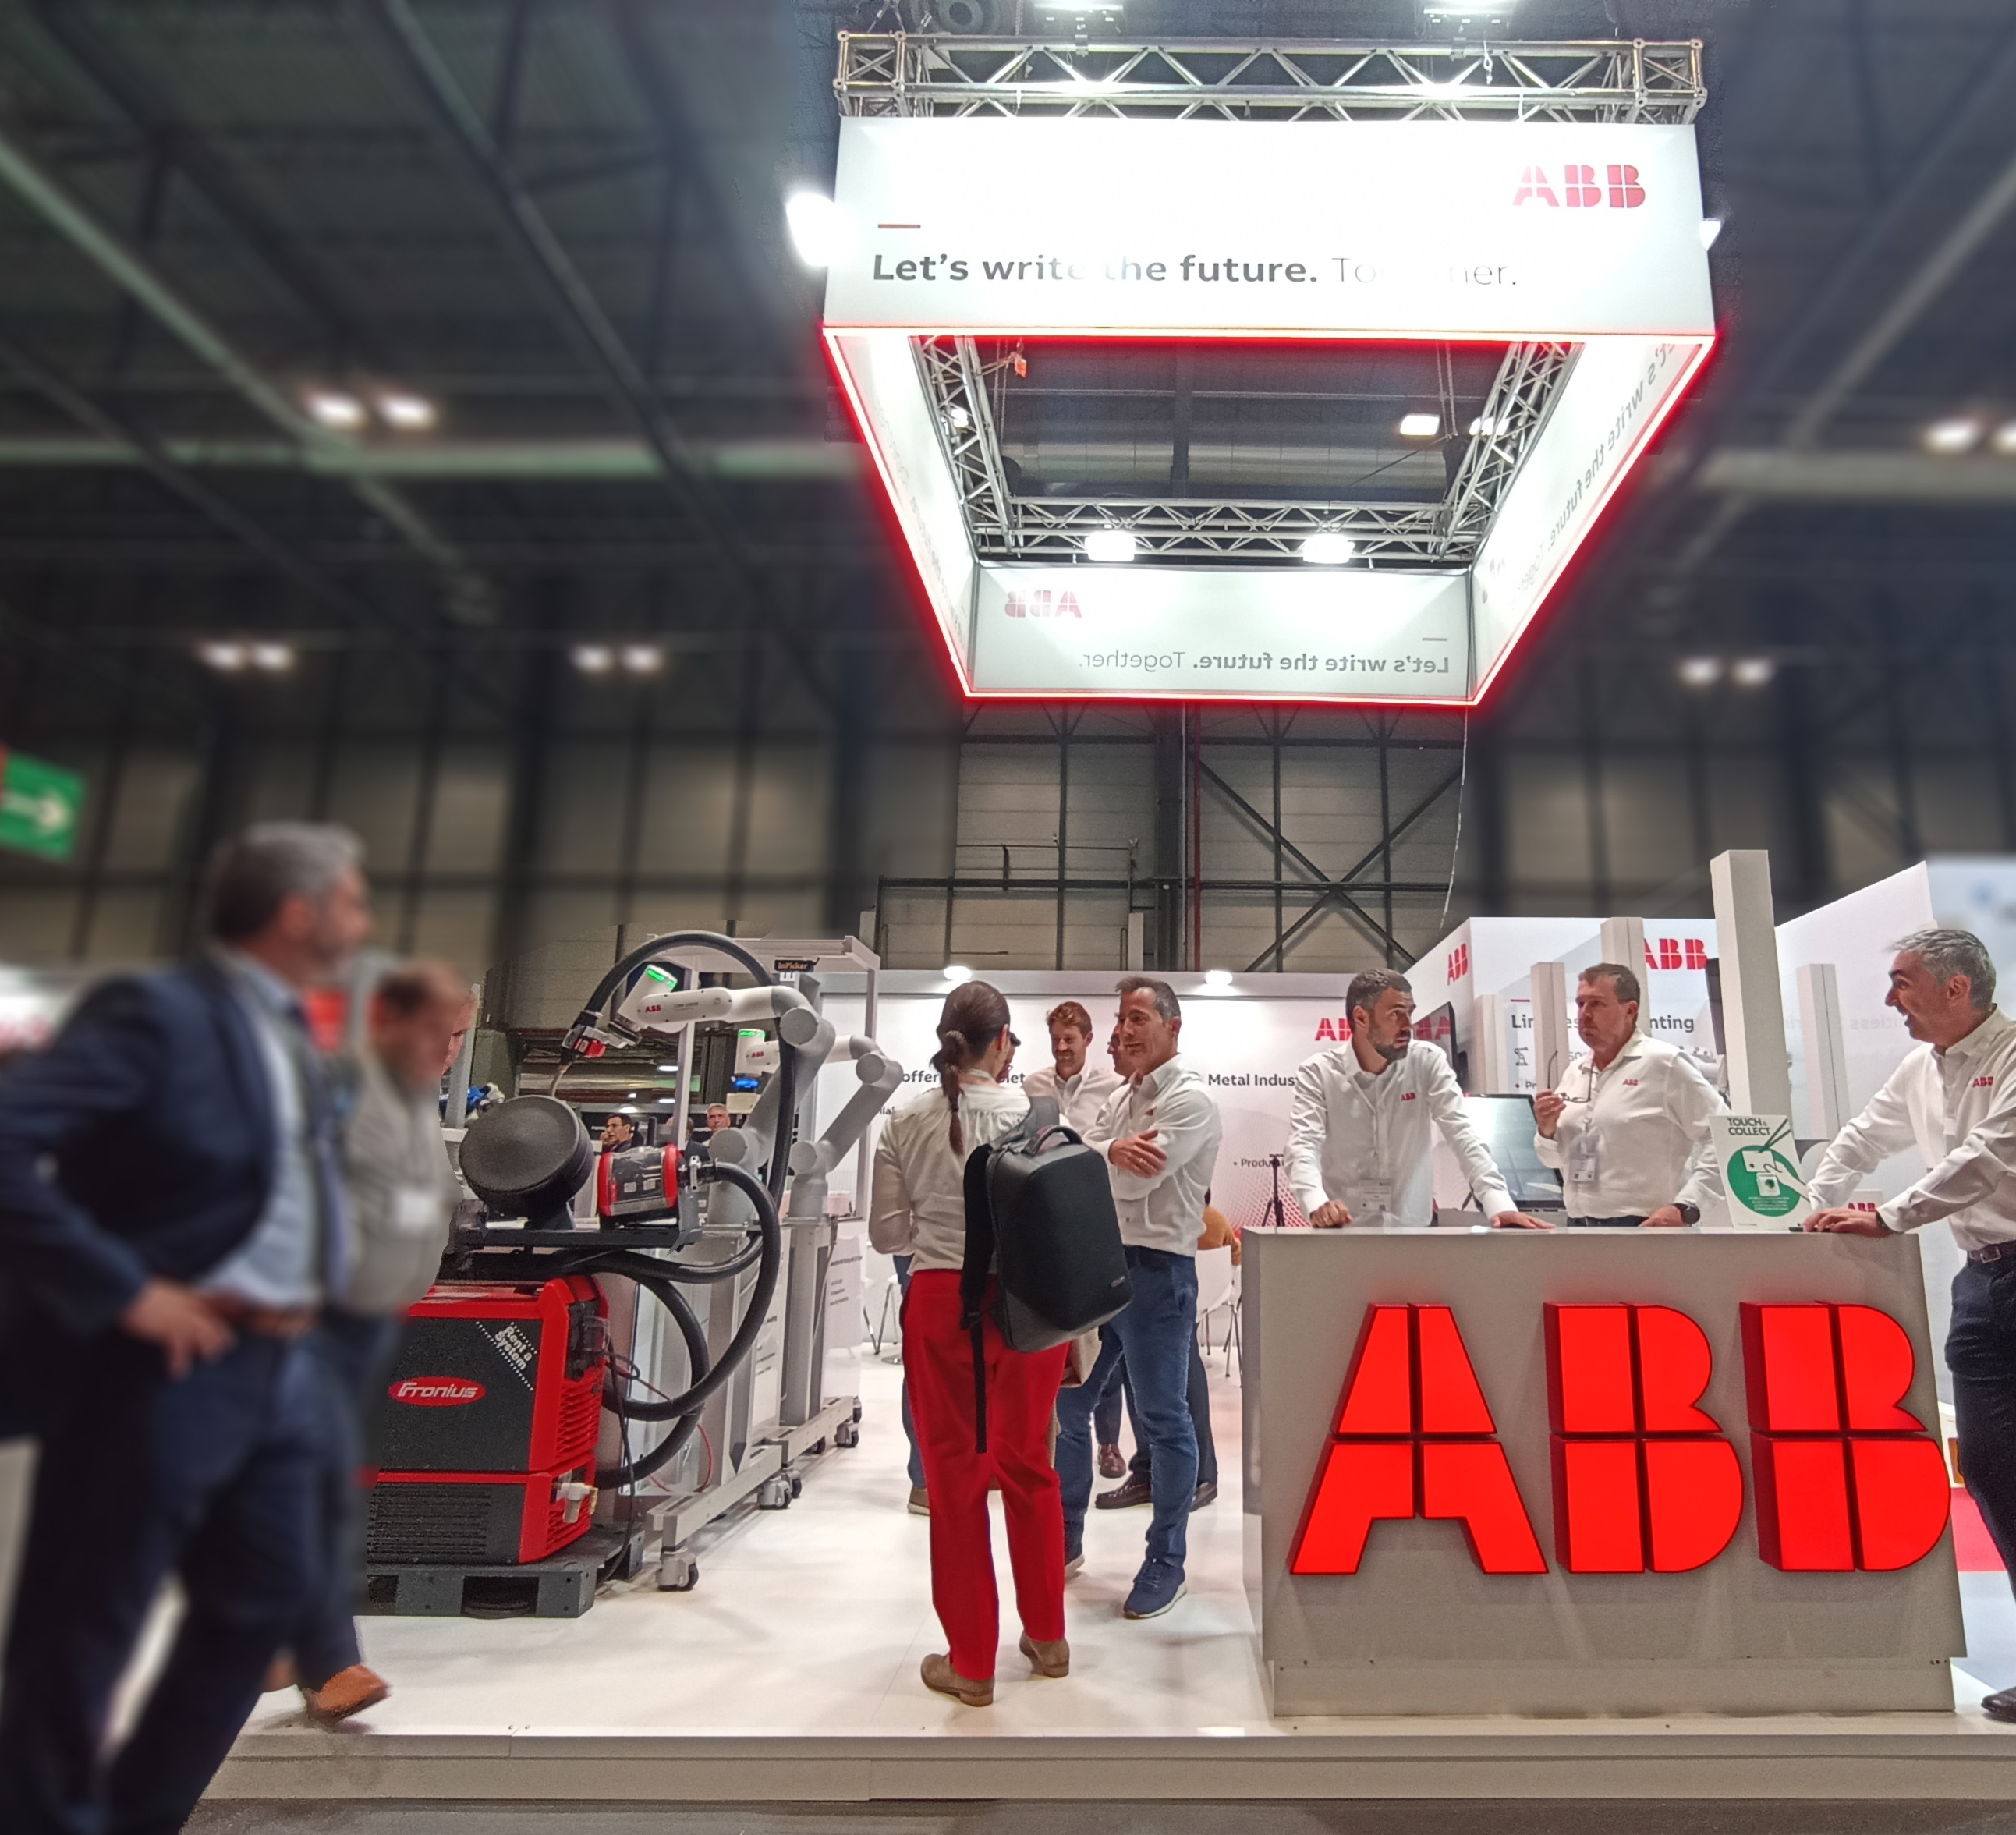 ABB presentó en MetalMadrid 2022 sus últimos avances en robótica colaborativa, industrial y digitalización para transformar la industria del metal